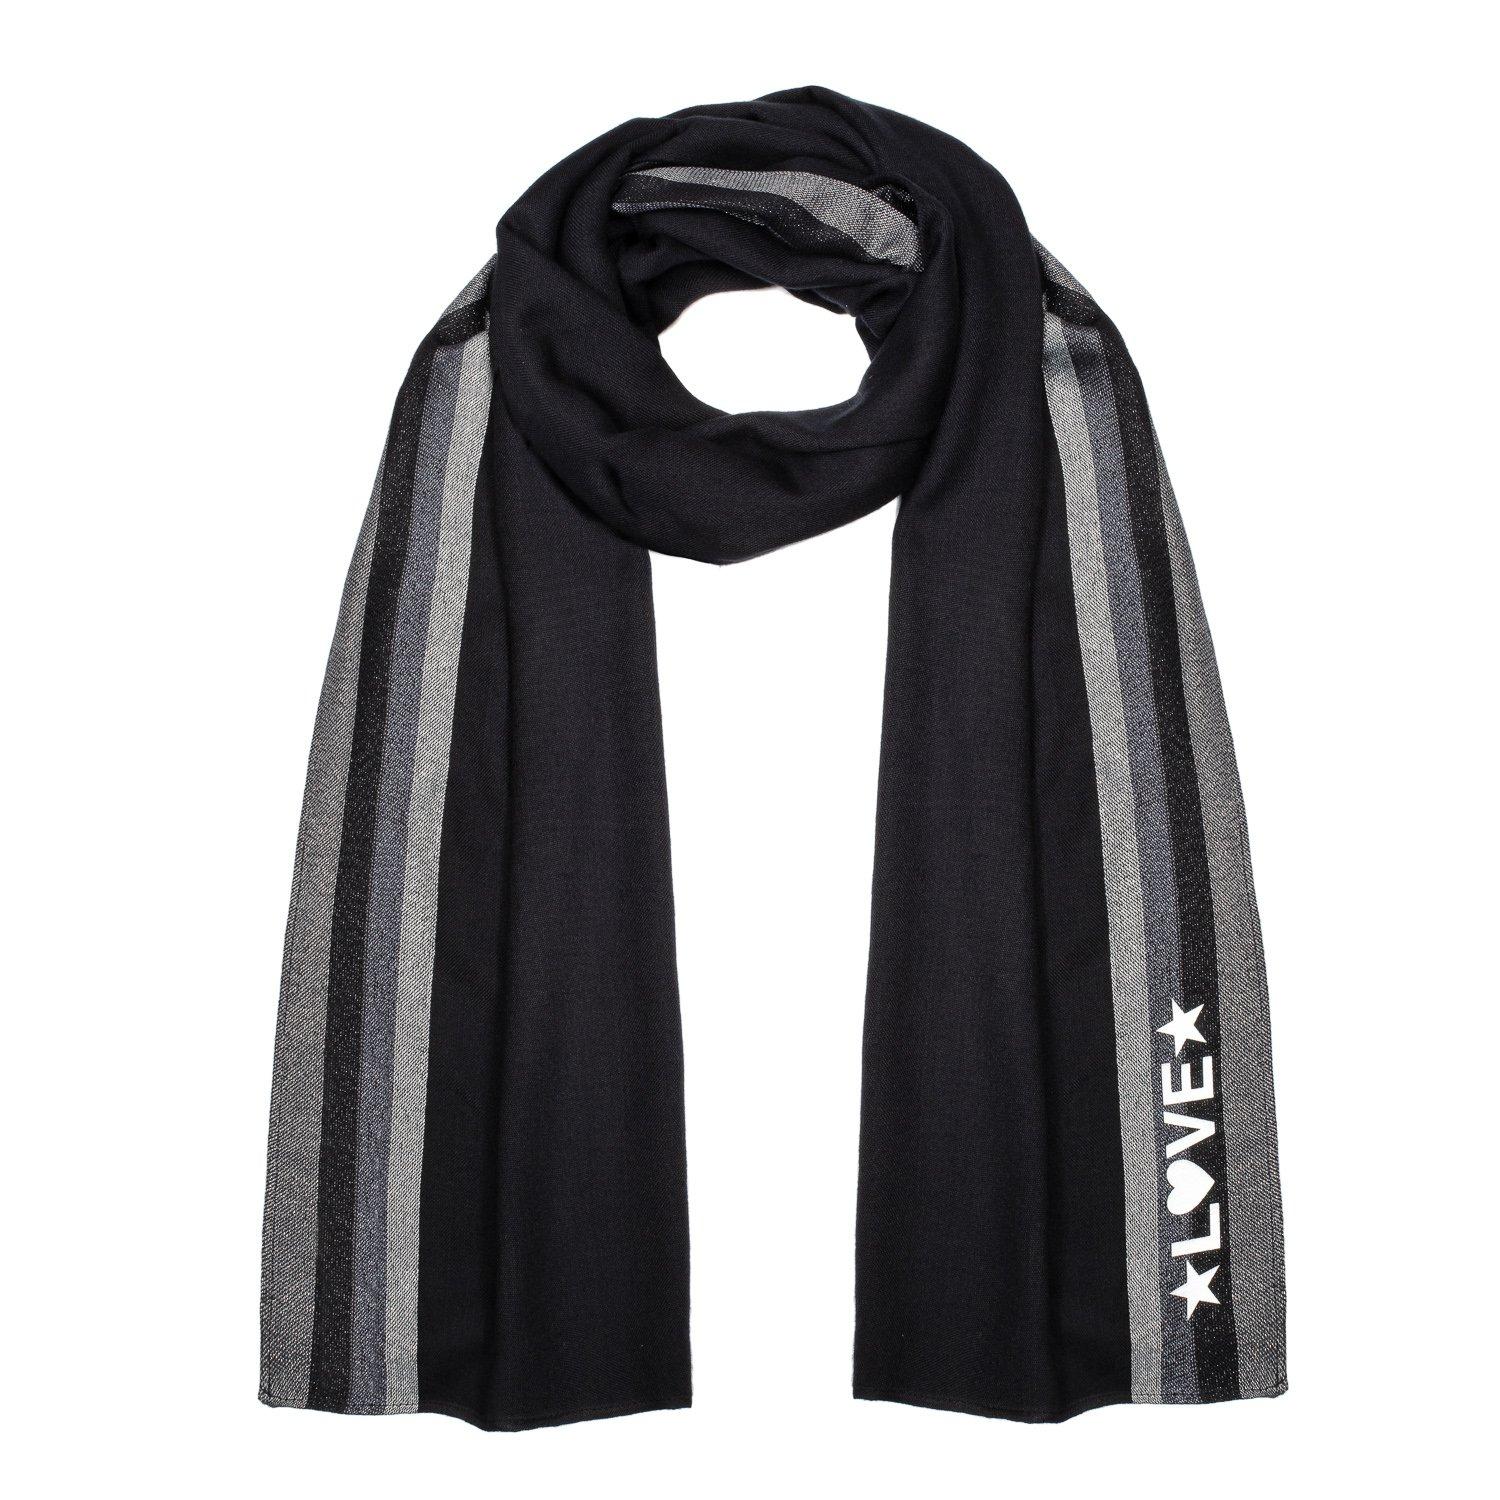 Черный шарф с надписью Бесконечная любовь Bibi Bijoux, черный